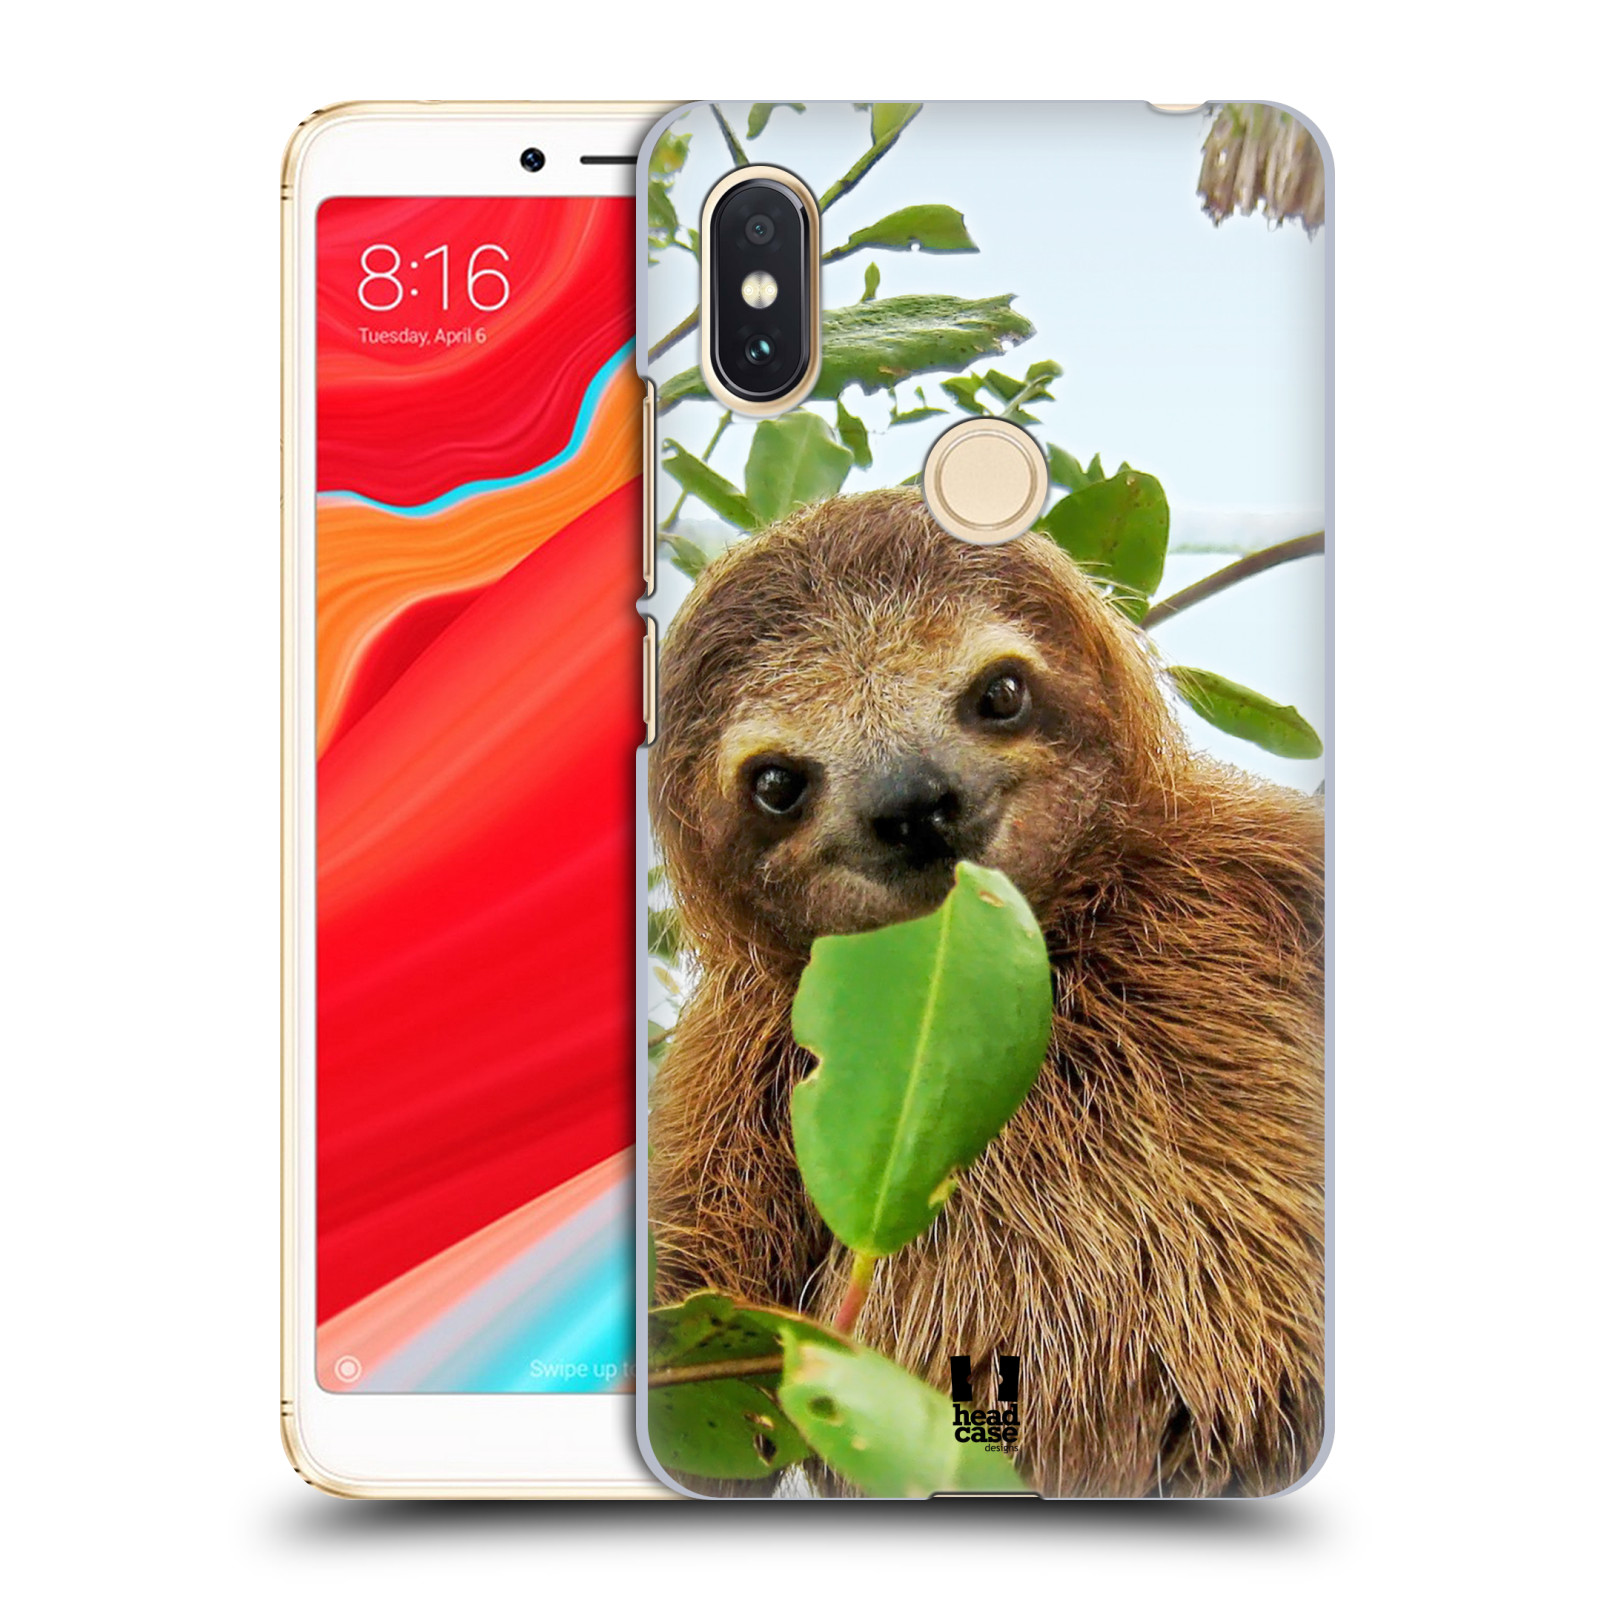 HEAD CASE plastový obal na mobil Xiaomi Redmi S2 vzor slavná zvířata foto lenochod